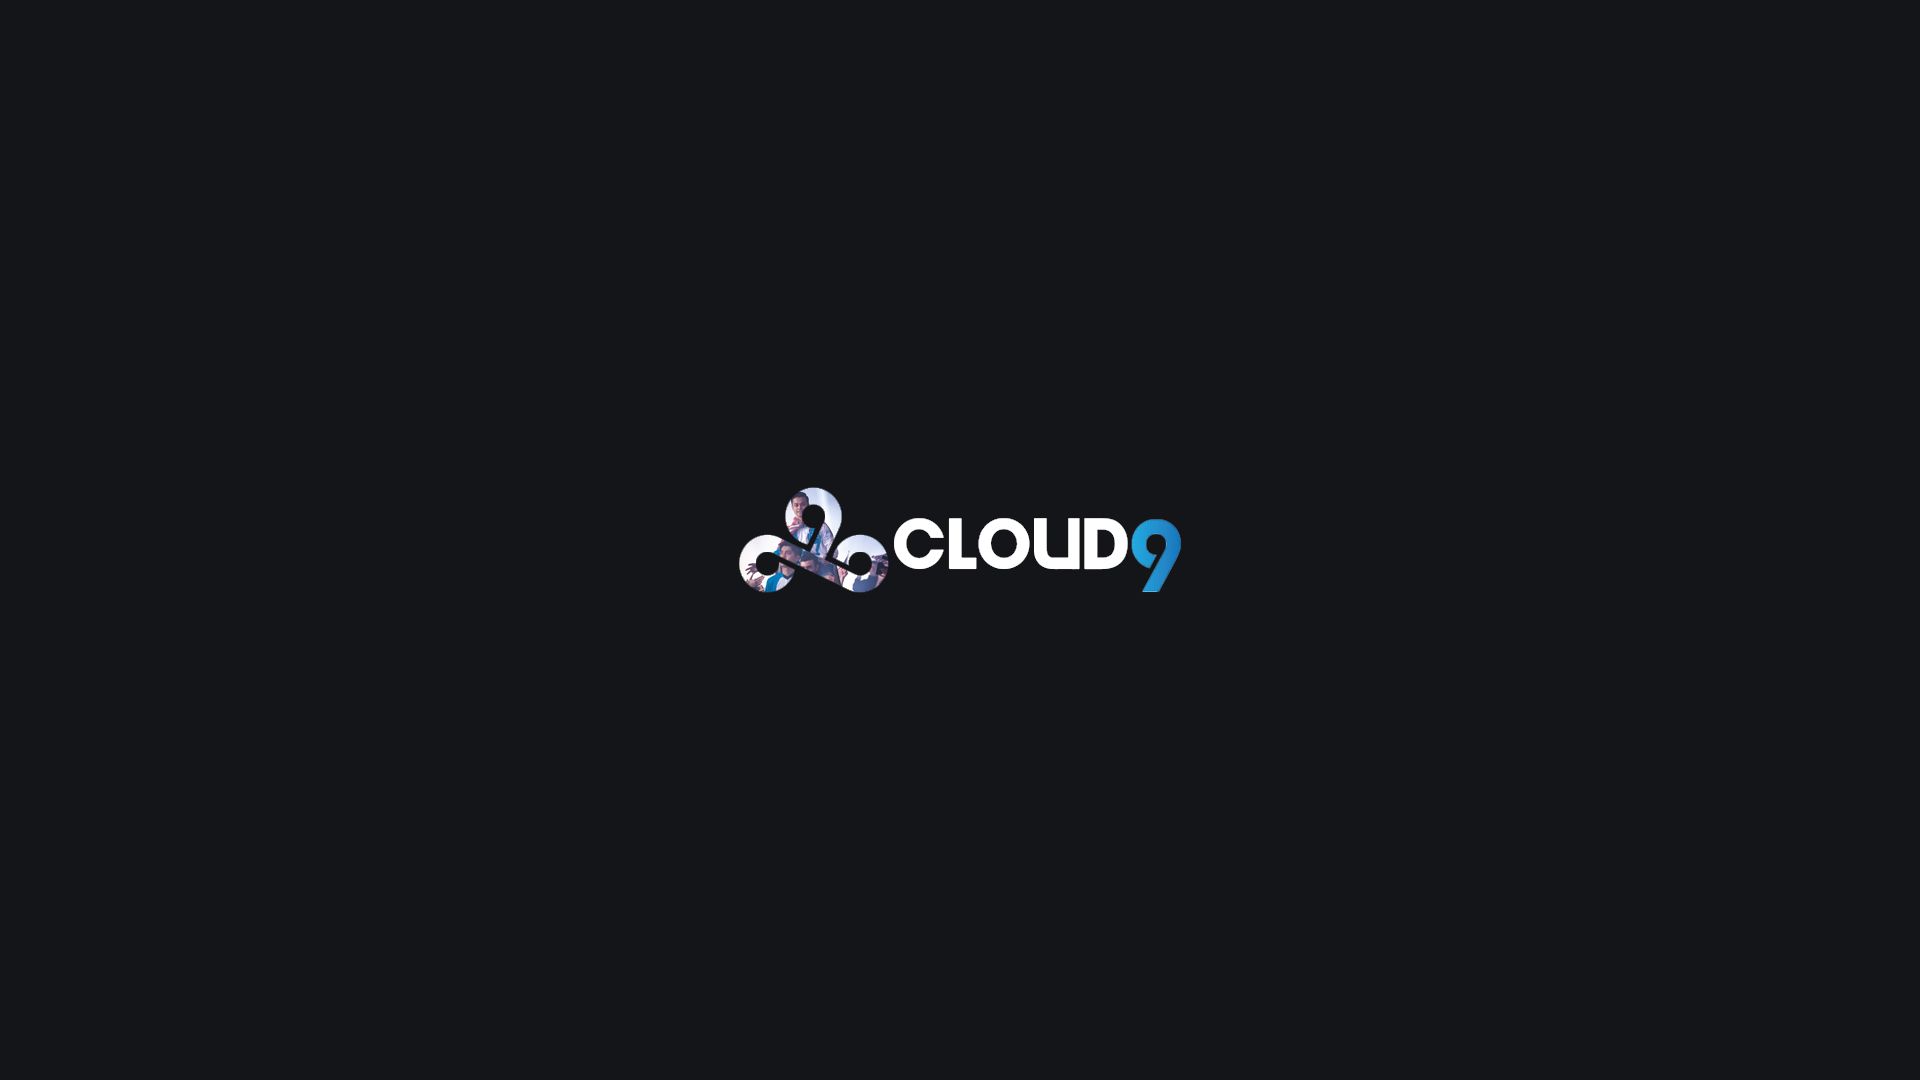 cloud 9 wallpaper 1920x1080